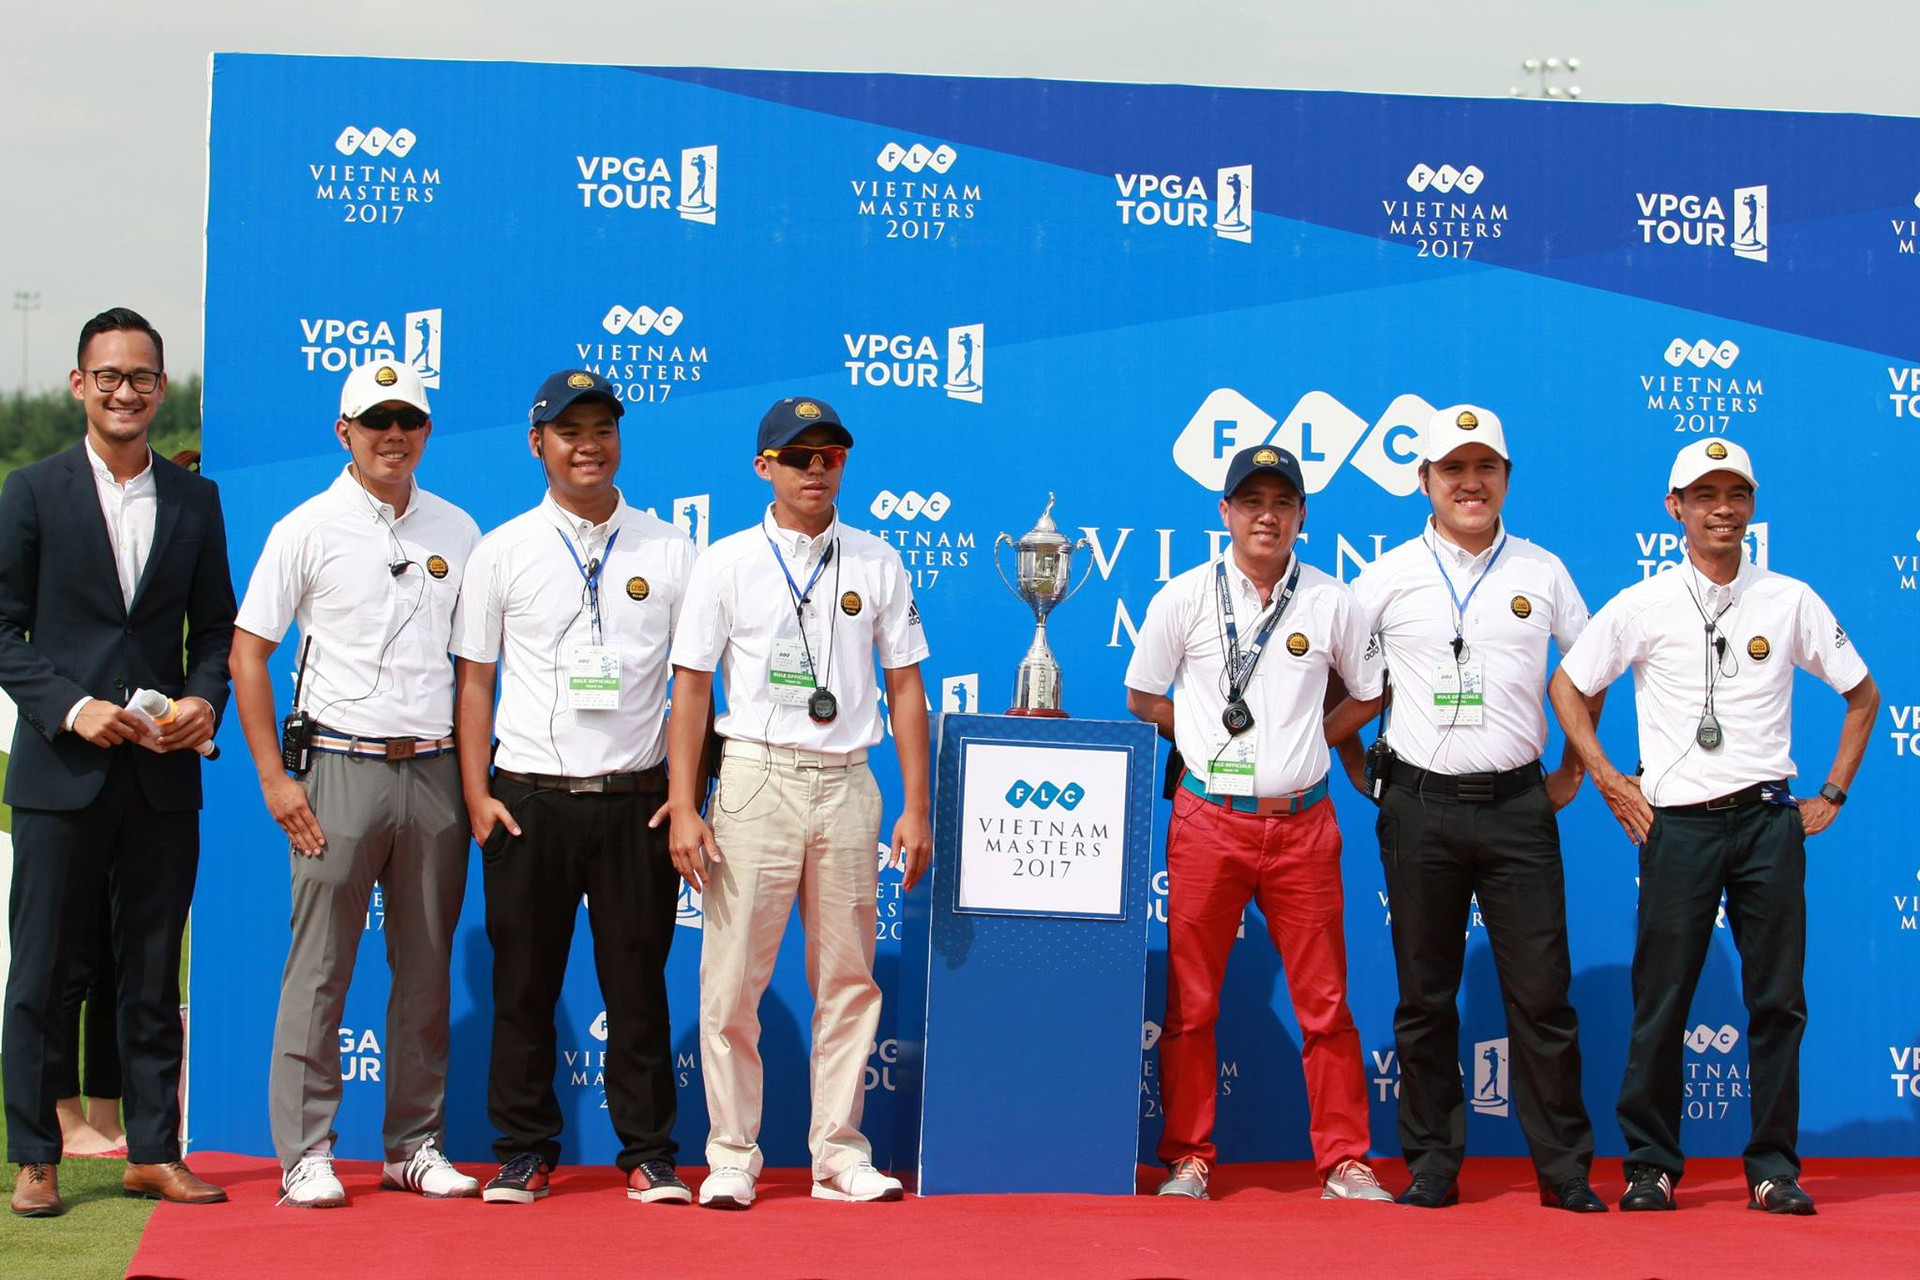 VPGA Tour: Nguồn cảm hứng của những người yêu golf Việt - Ảnh 3.